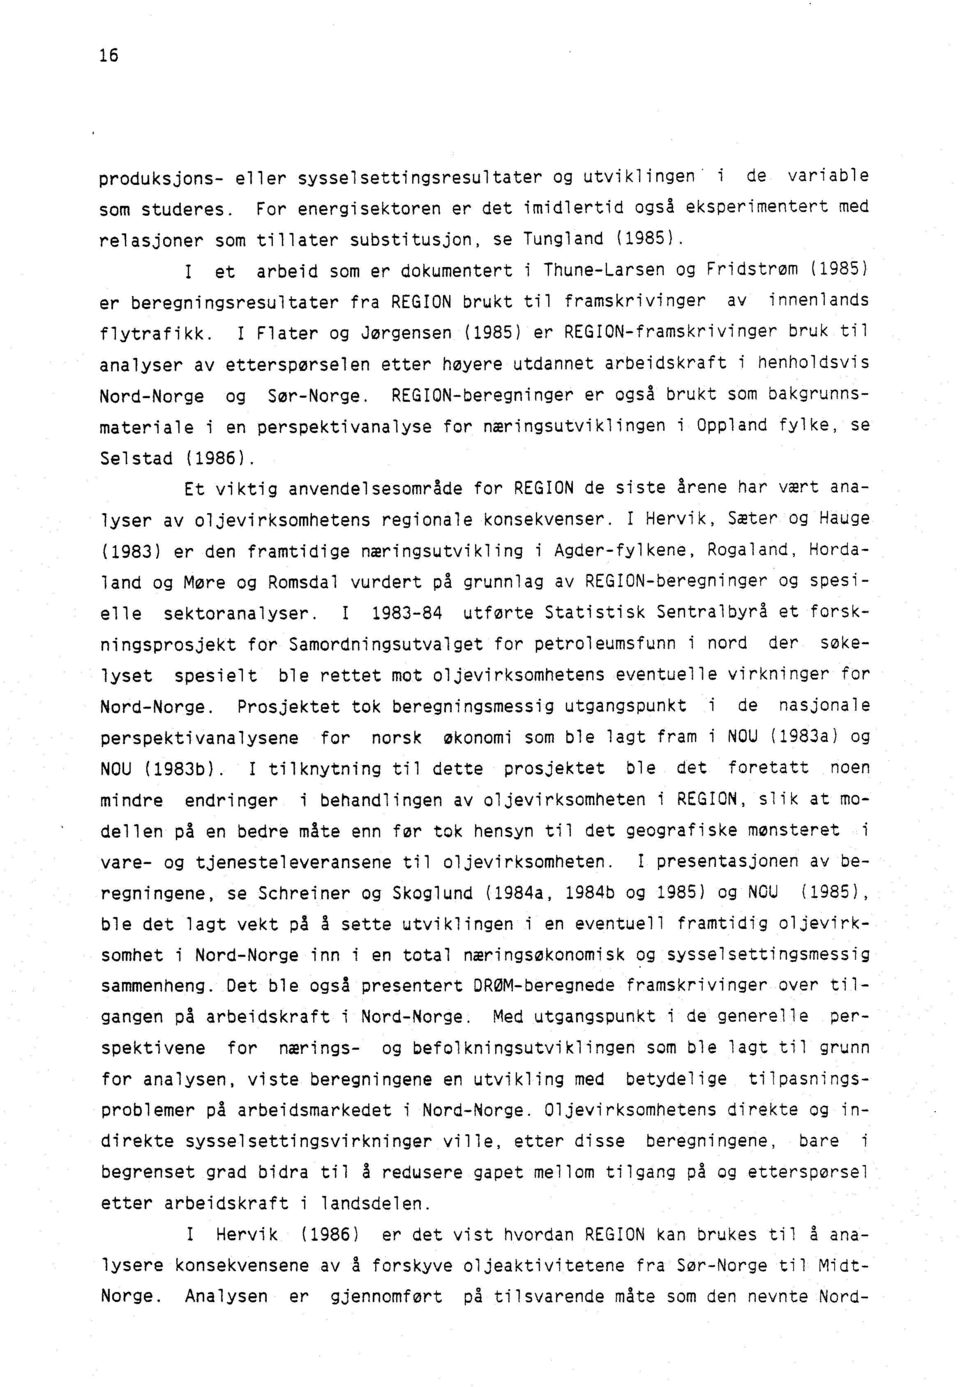 I et arbeid som er dokumentert i Thune-Larsen og Fridstrøm (1985) er beregningsresultater fra REGION brukt til framskrivinger av innenlands flytrafikk.